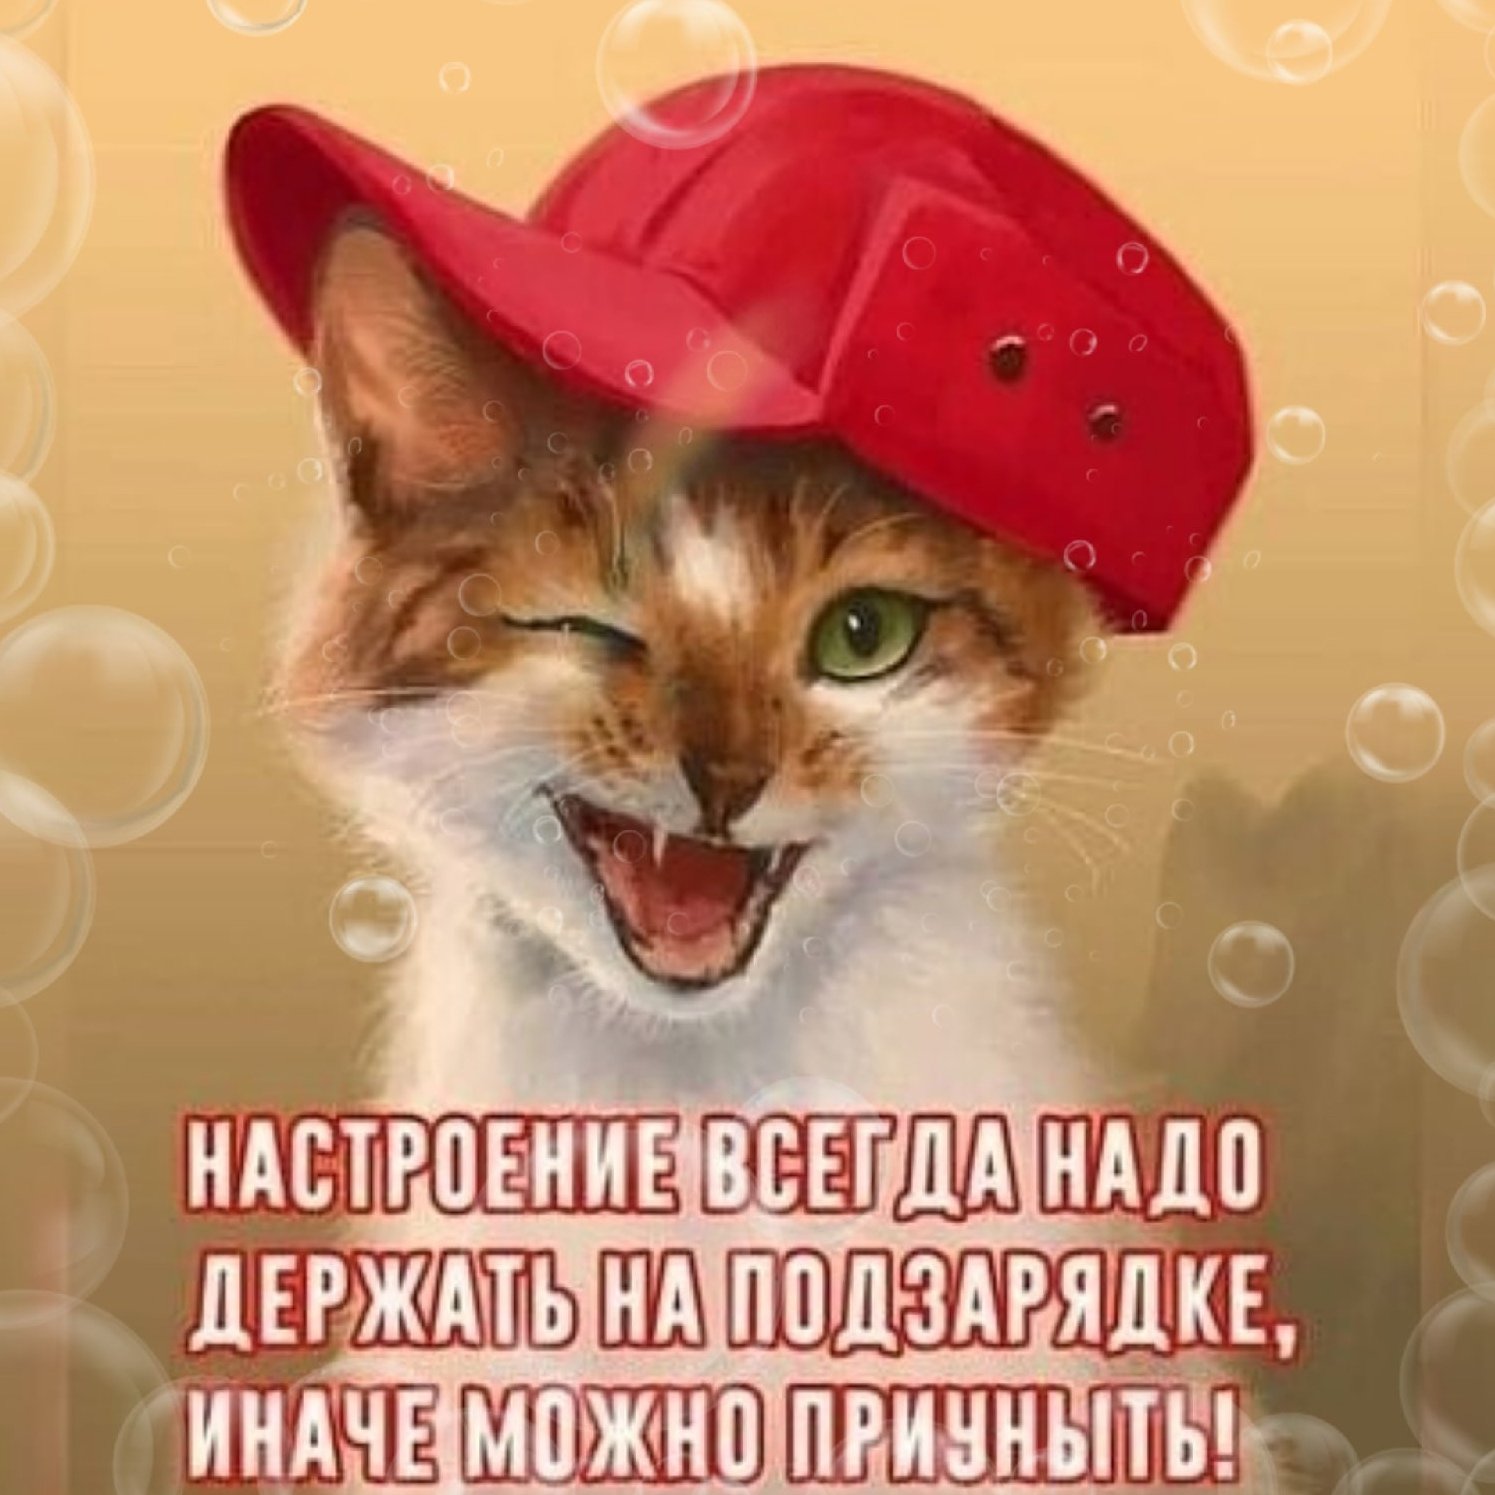 Том и привет друзья. Кот в кепке. Приветик картинки прикольные. Рыжий кот в кепке. Смешные картинки приветствия.